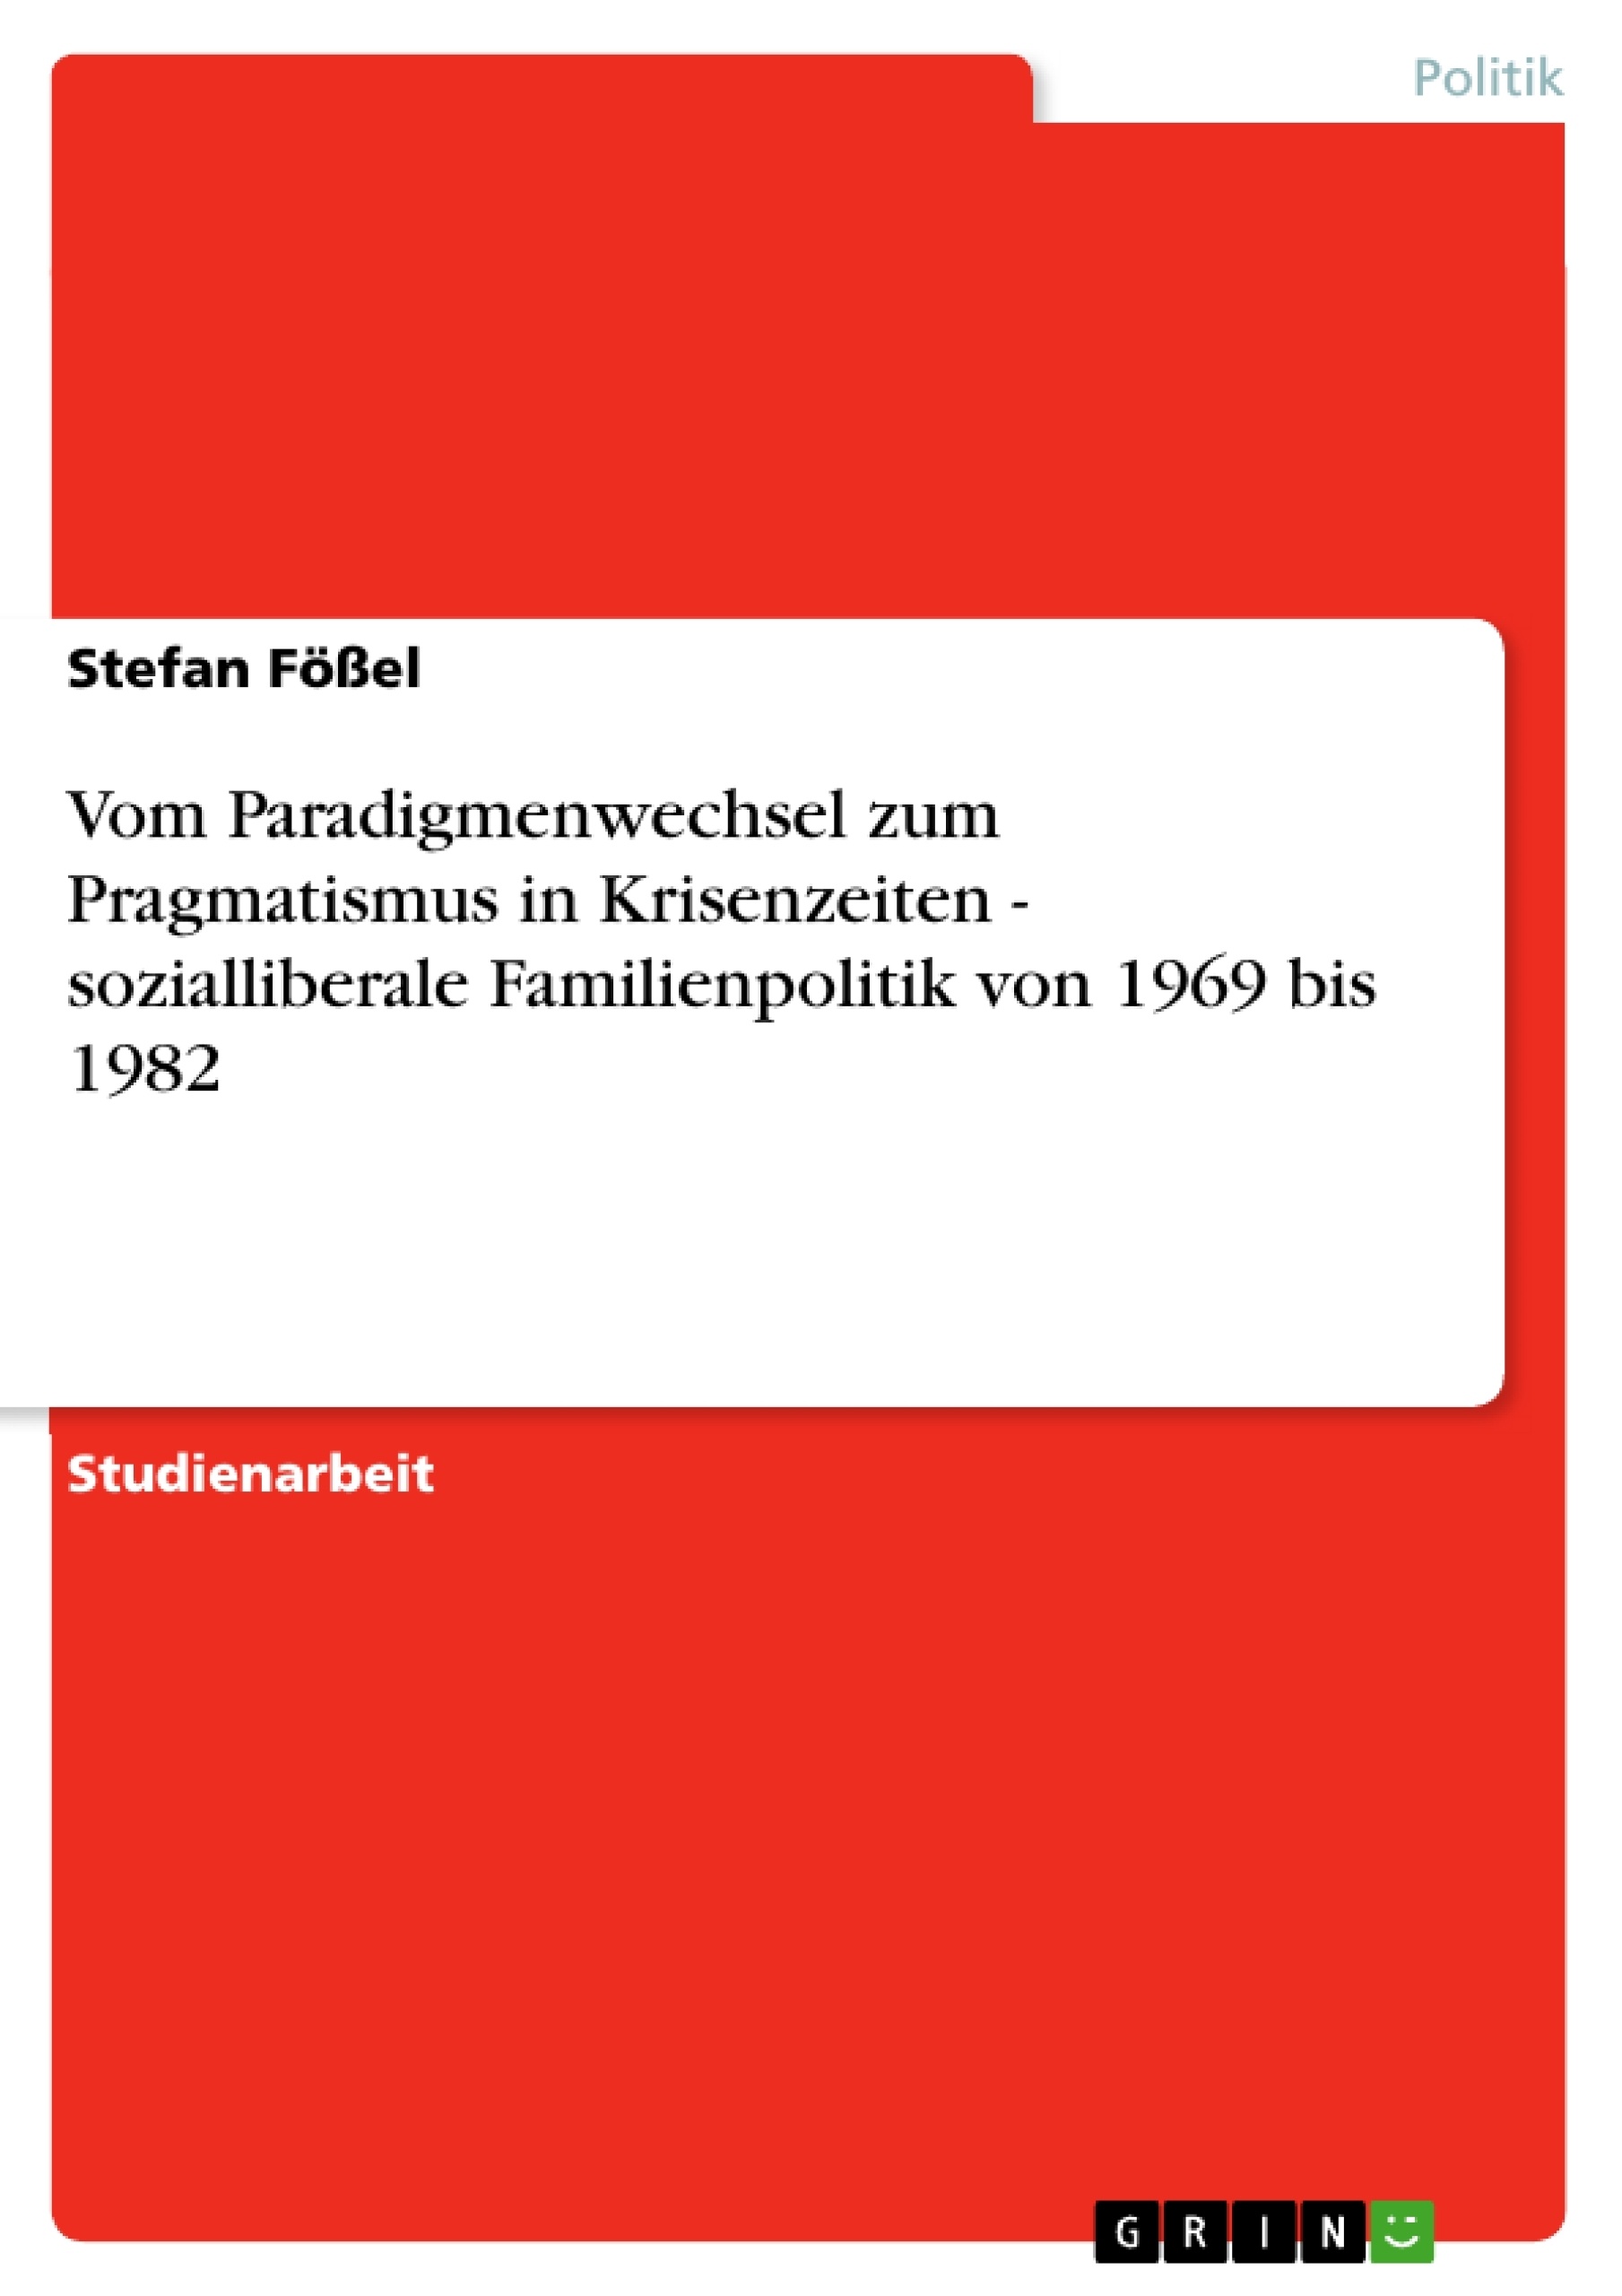 Titre: Vom Paradigmenwechsel zum Pragmatismus in Krisenzeiten - sozialliberale Familienpolitik von 1969 bis 1982